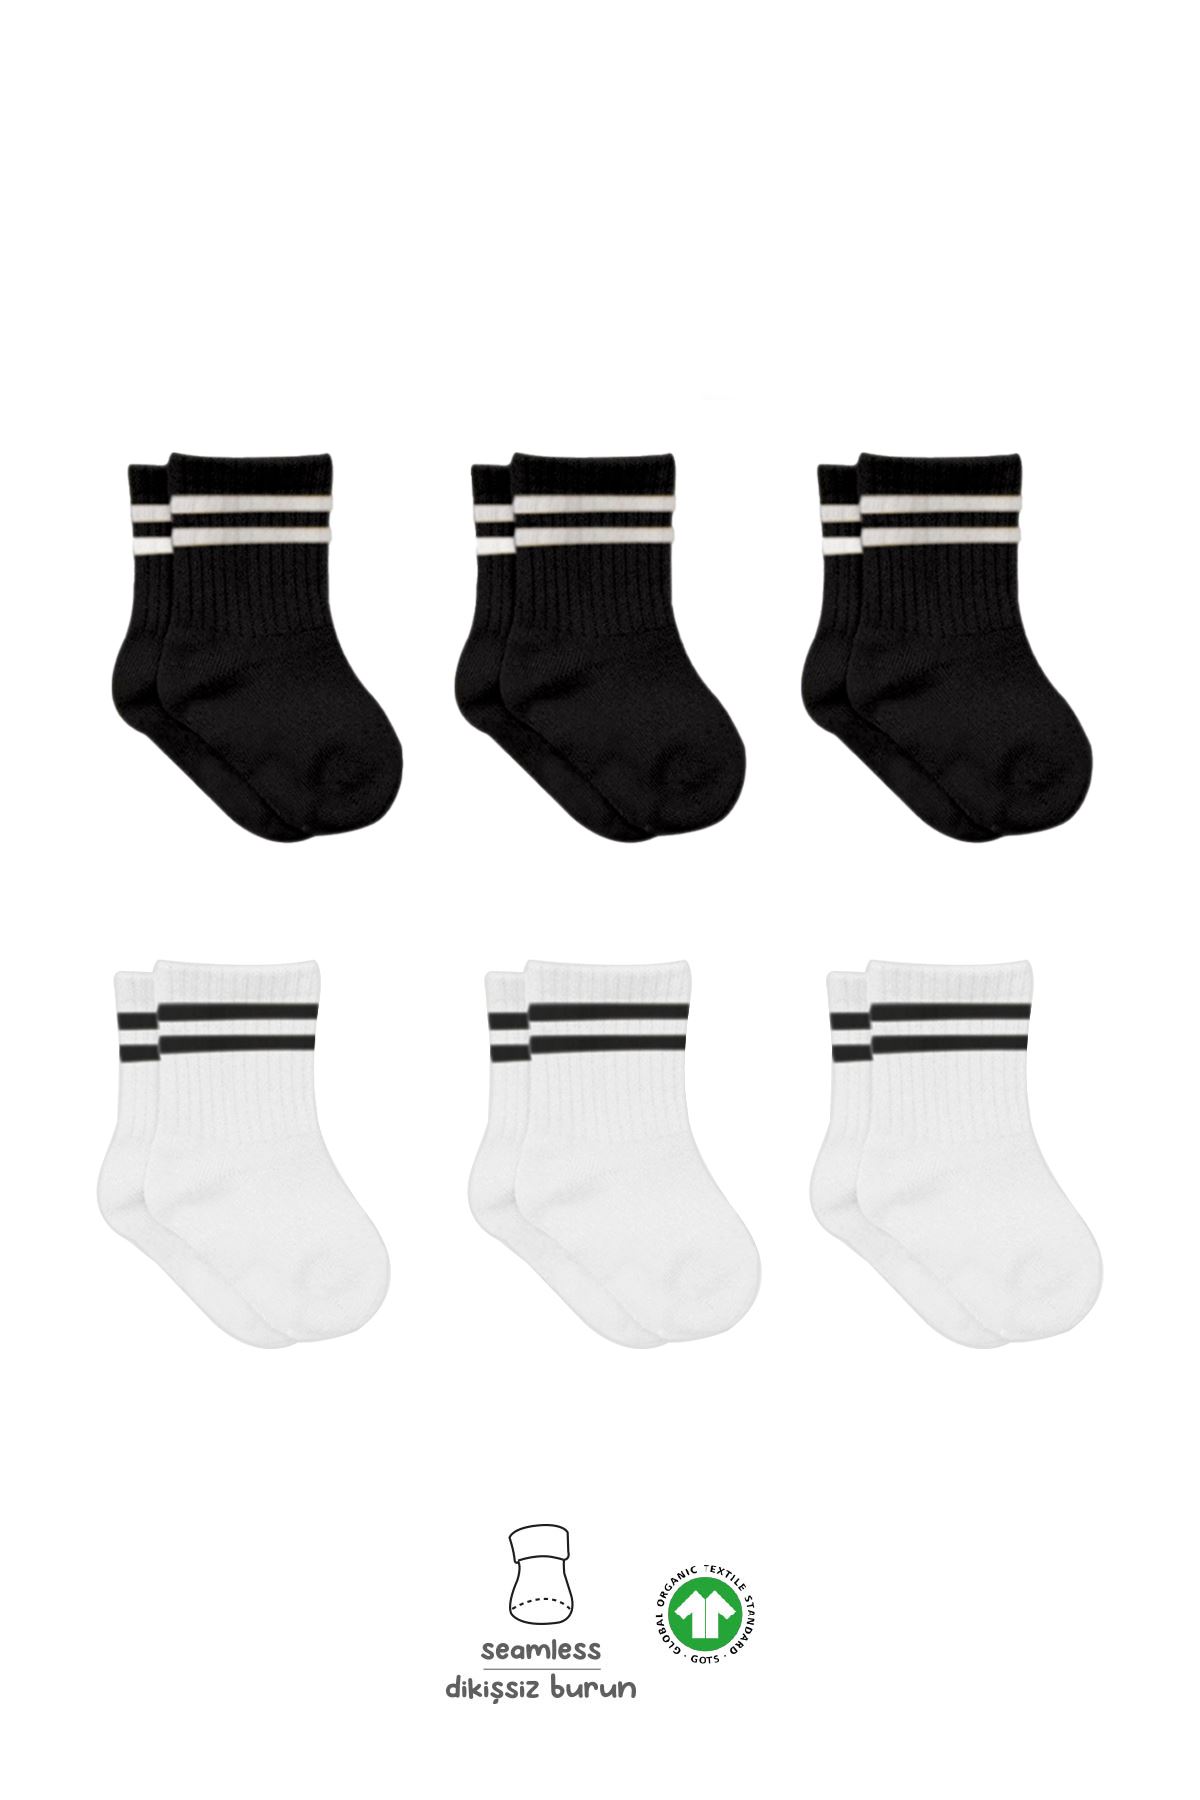 Bistyle 6lı Penye Çemberli Soket Çorap BS6003 Siyah Beyaz